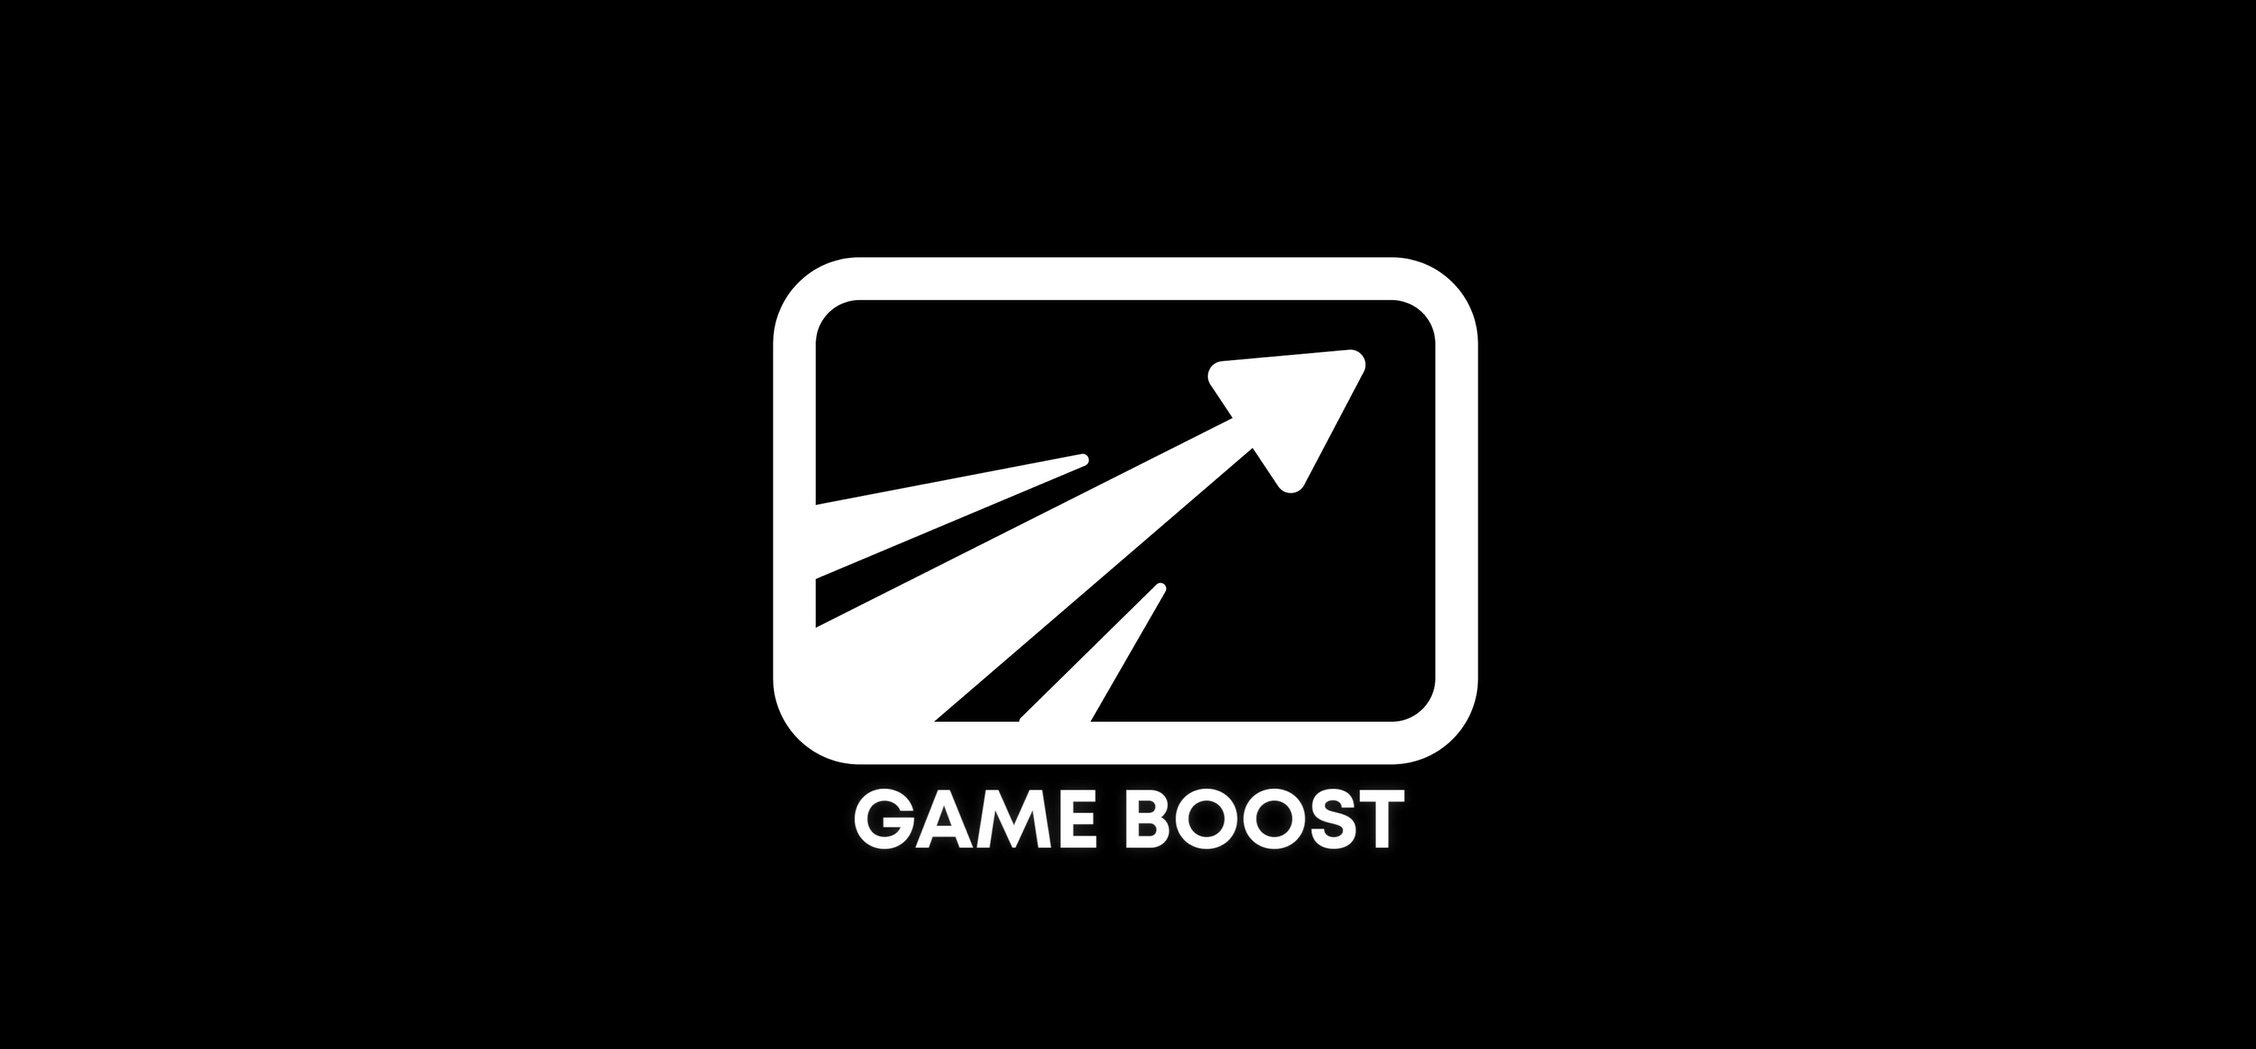 ps5 game boost, game boost özelliği, ps4 oyun desteği, geriye dönük oyun desteği